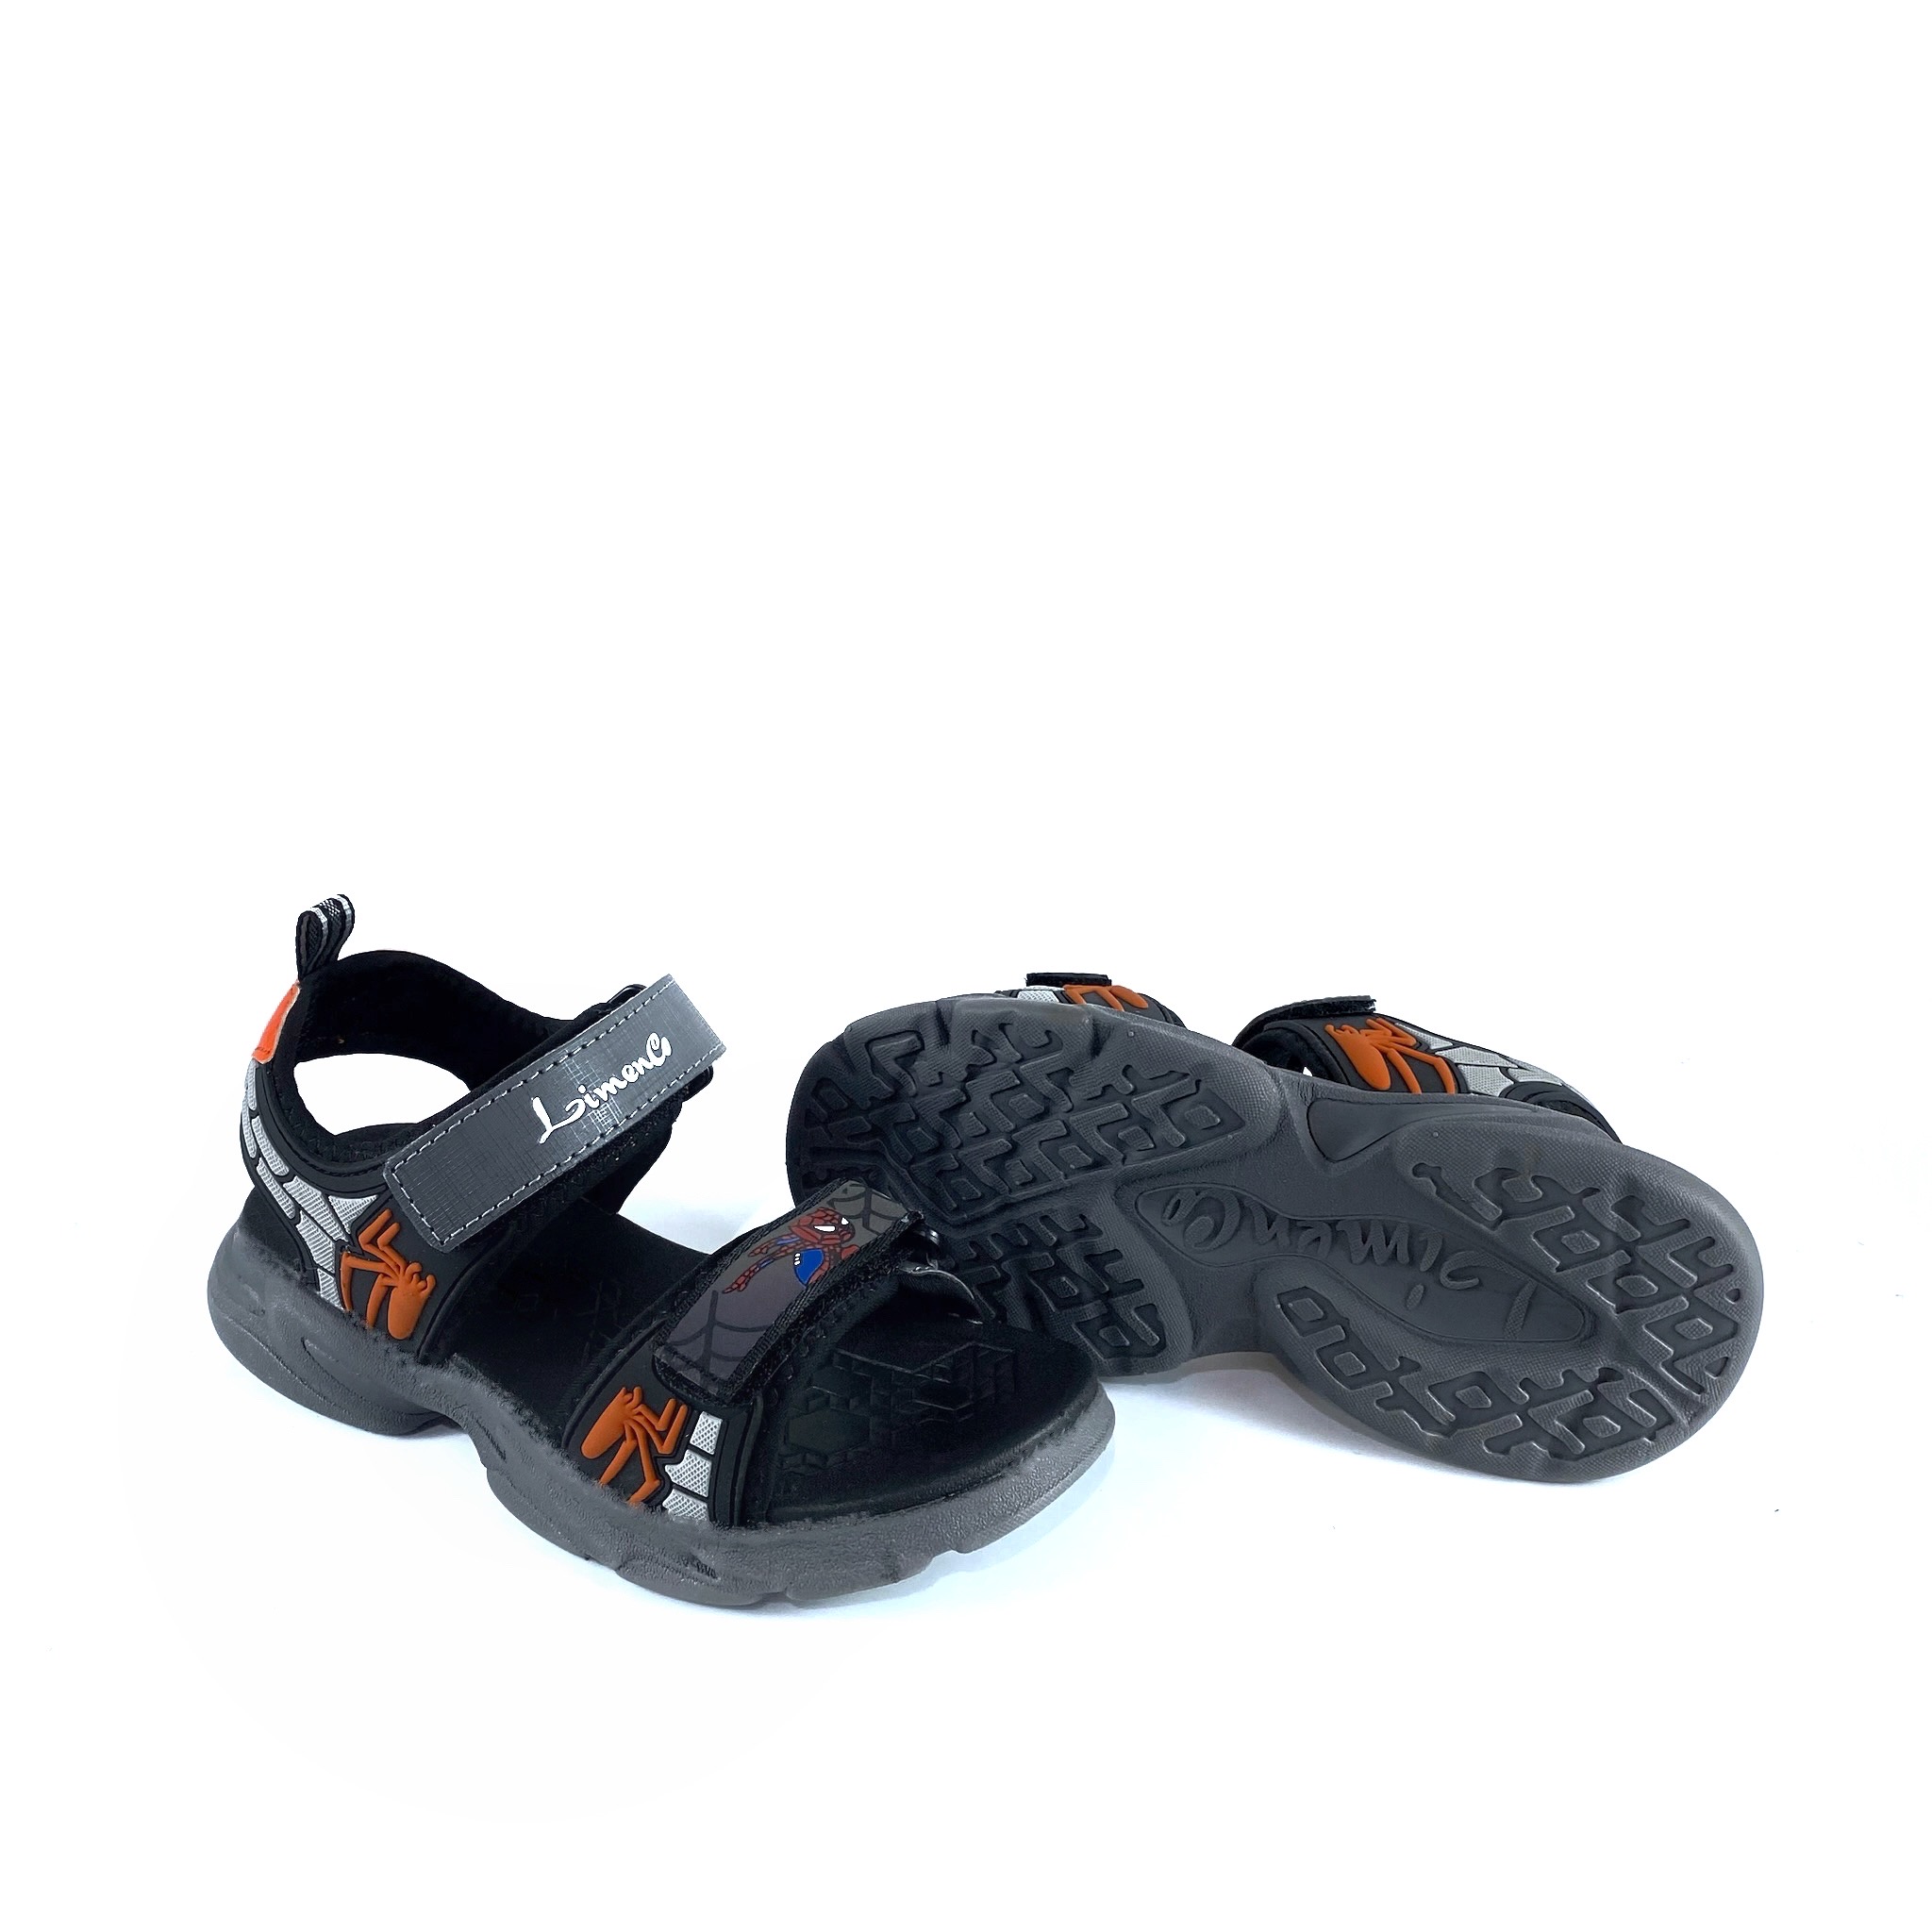 Giày Sandal Bé Trai L1885 Màu Cam, êm nhẹ, thoáng khí, đi học, đi chơi